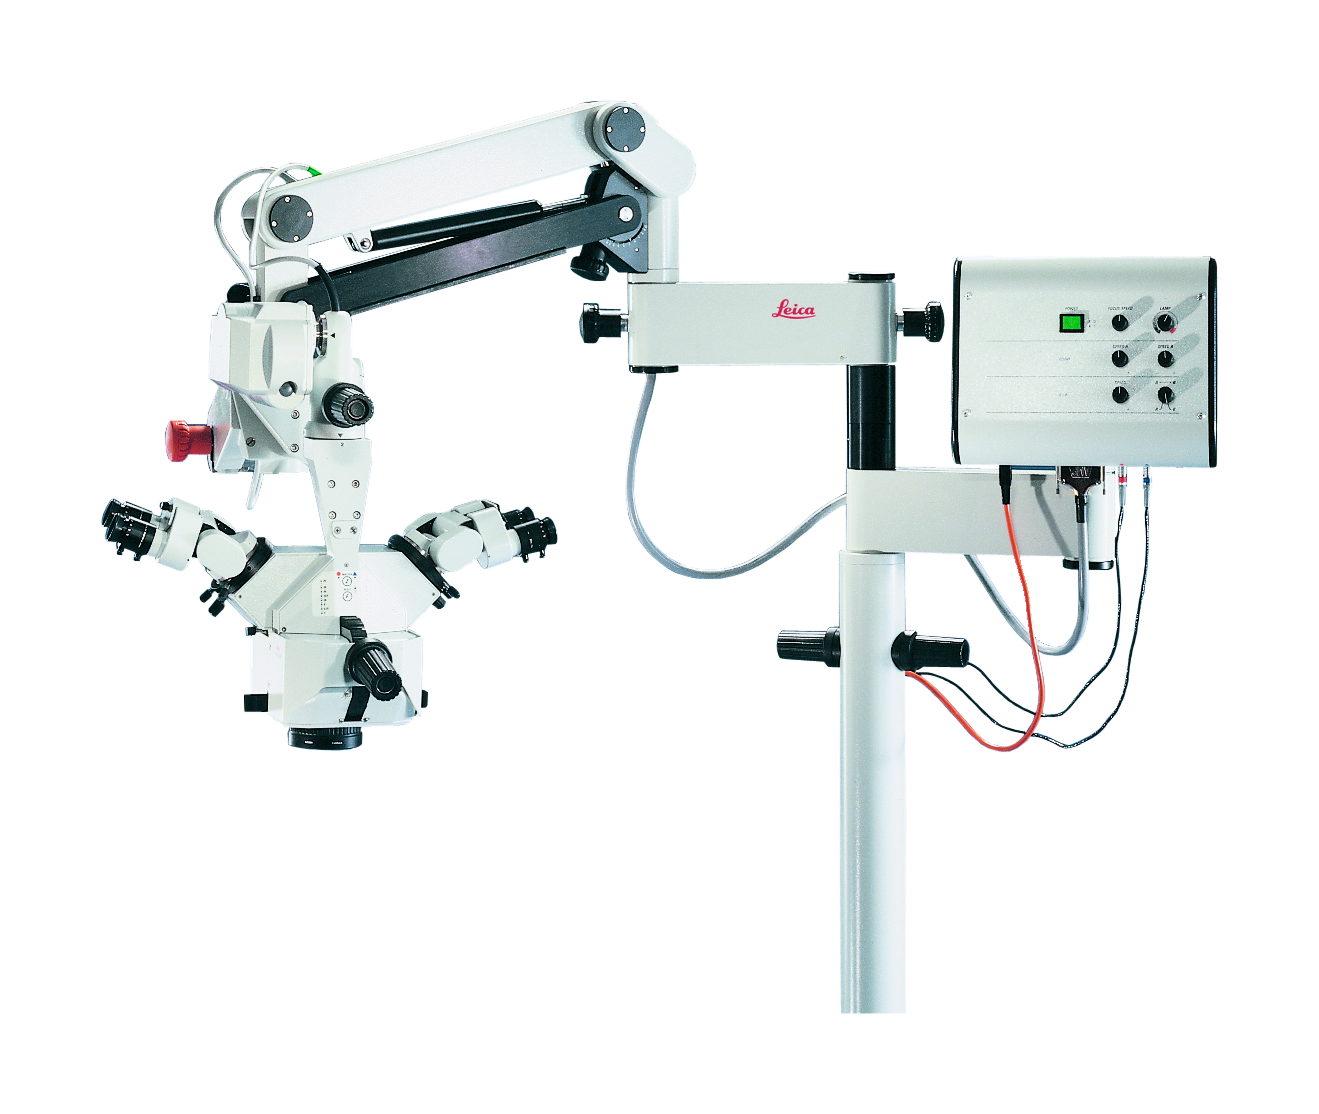 Microscopio chirurgico Leica M680 per chirurgia ricostruttiva, della mano, cardiaca e spinale, urologia e ginecologia